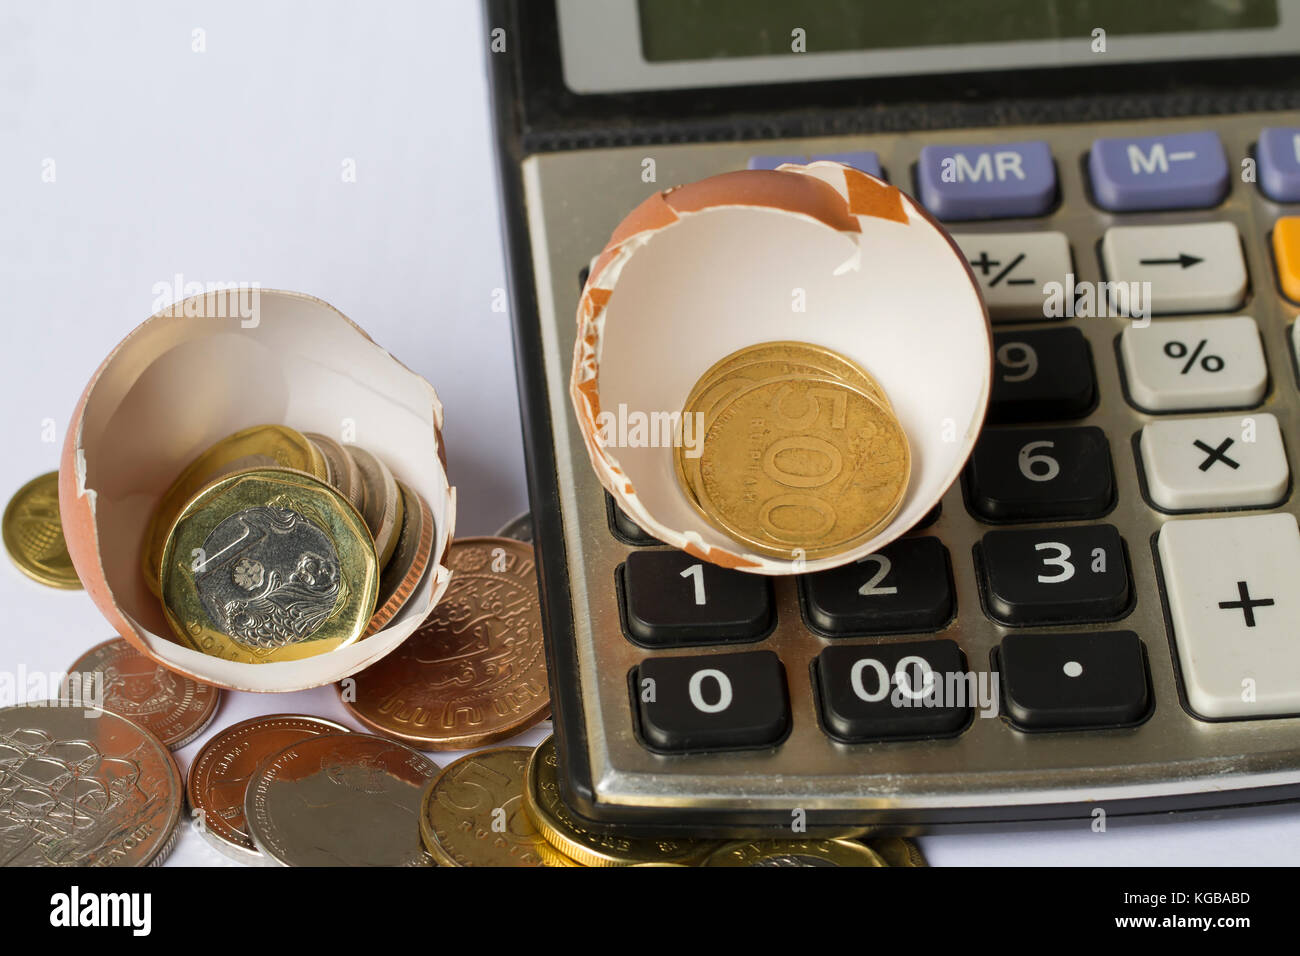 Calcul de l'investissement d'entreprise / planification financière d'entreprise / démarrage d'entreprise illustré avec coquille d'œuf, calculatrice, et pièces de monnaie Banque D'Images